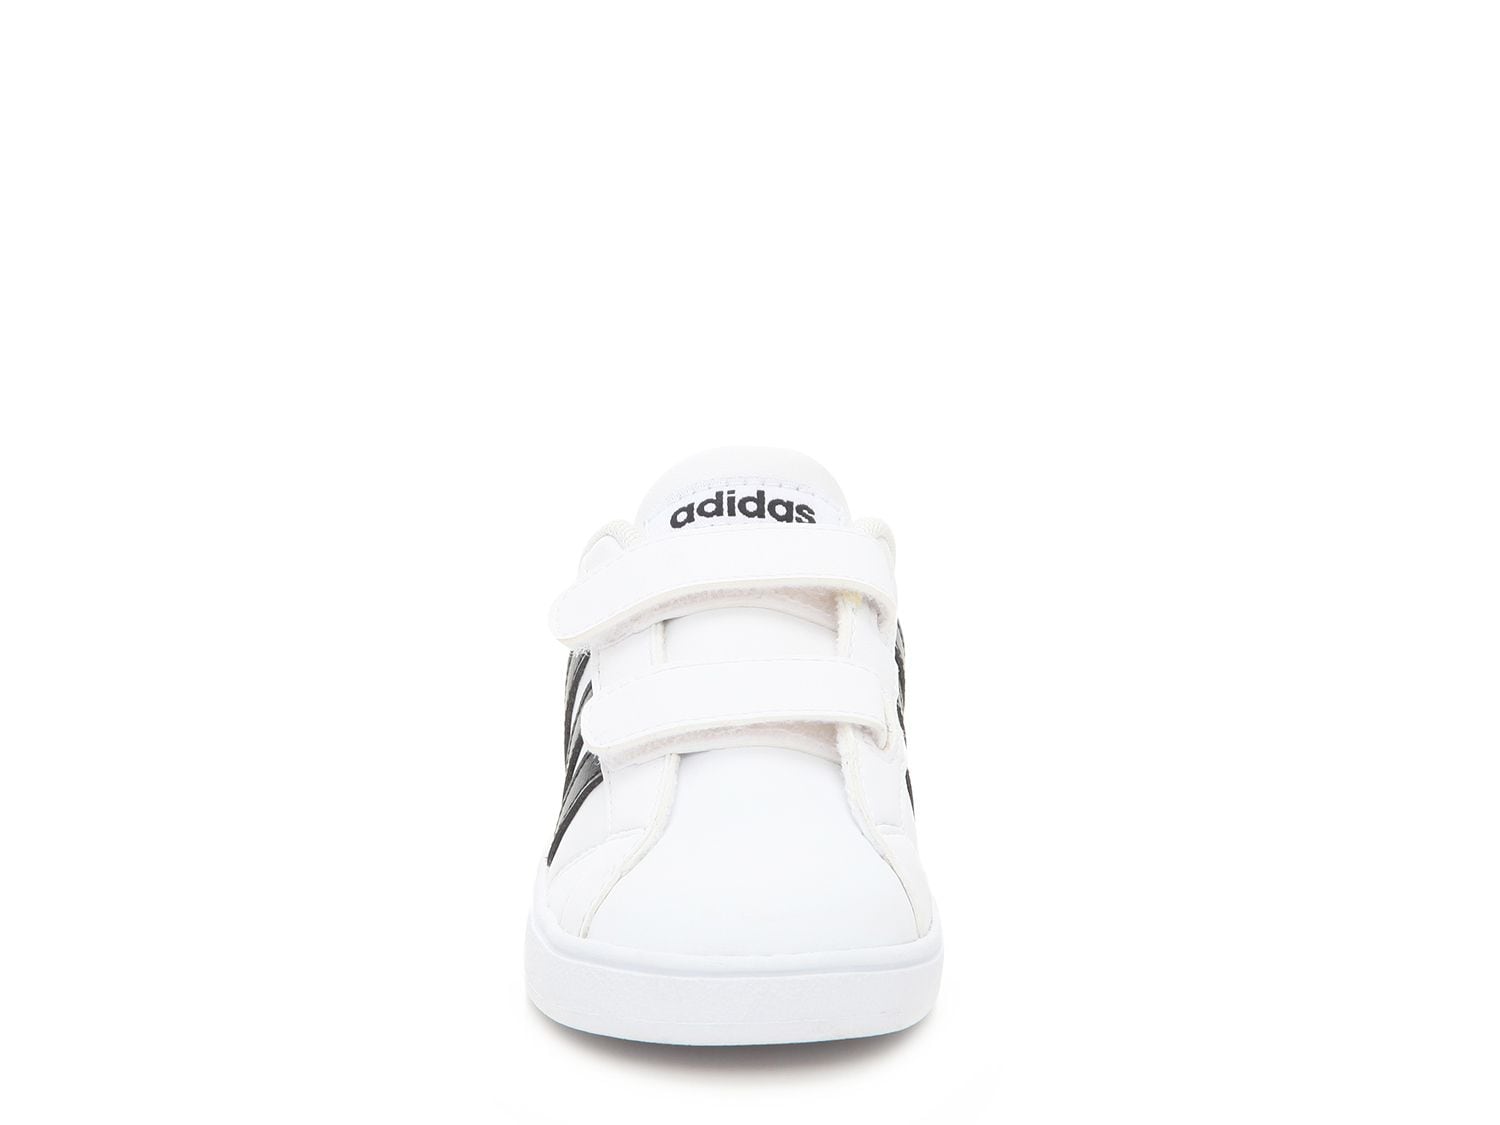 adidas baseline toddler shoes